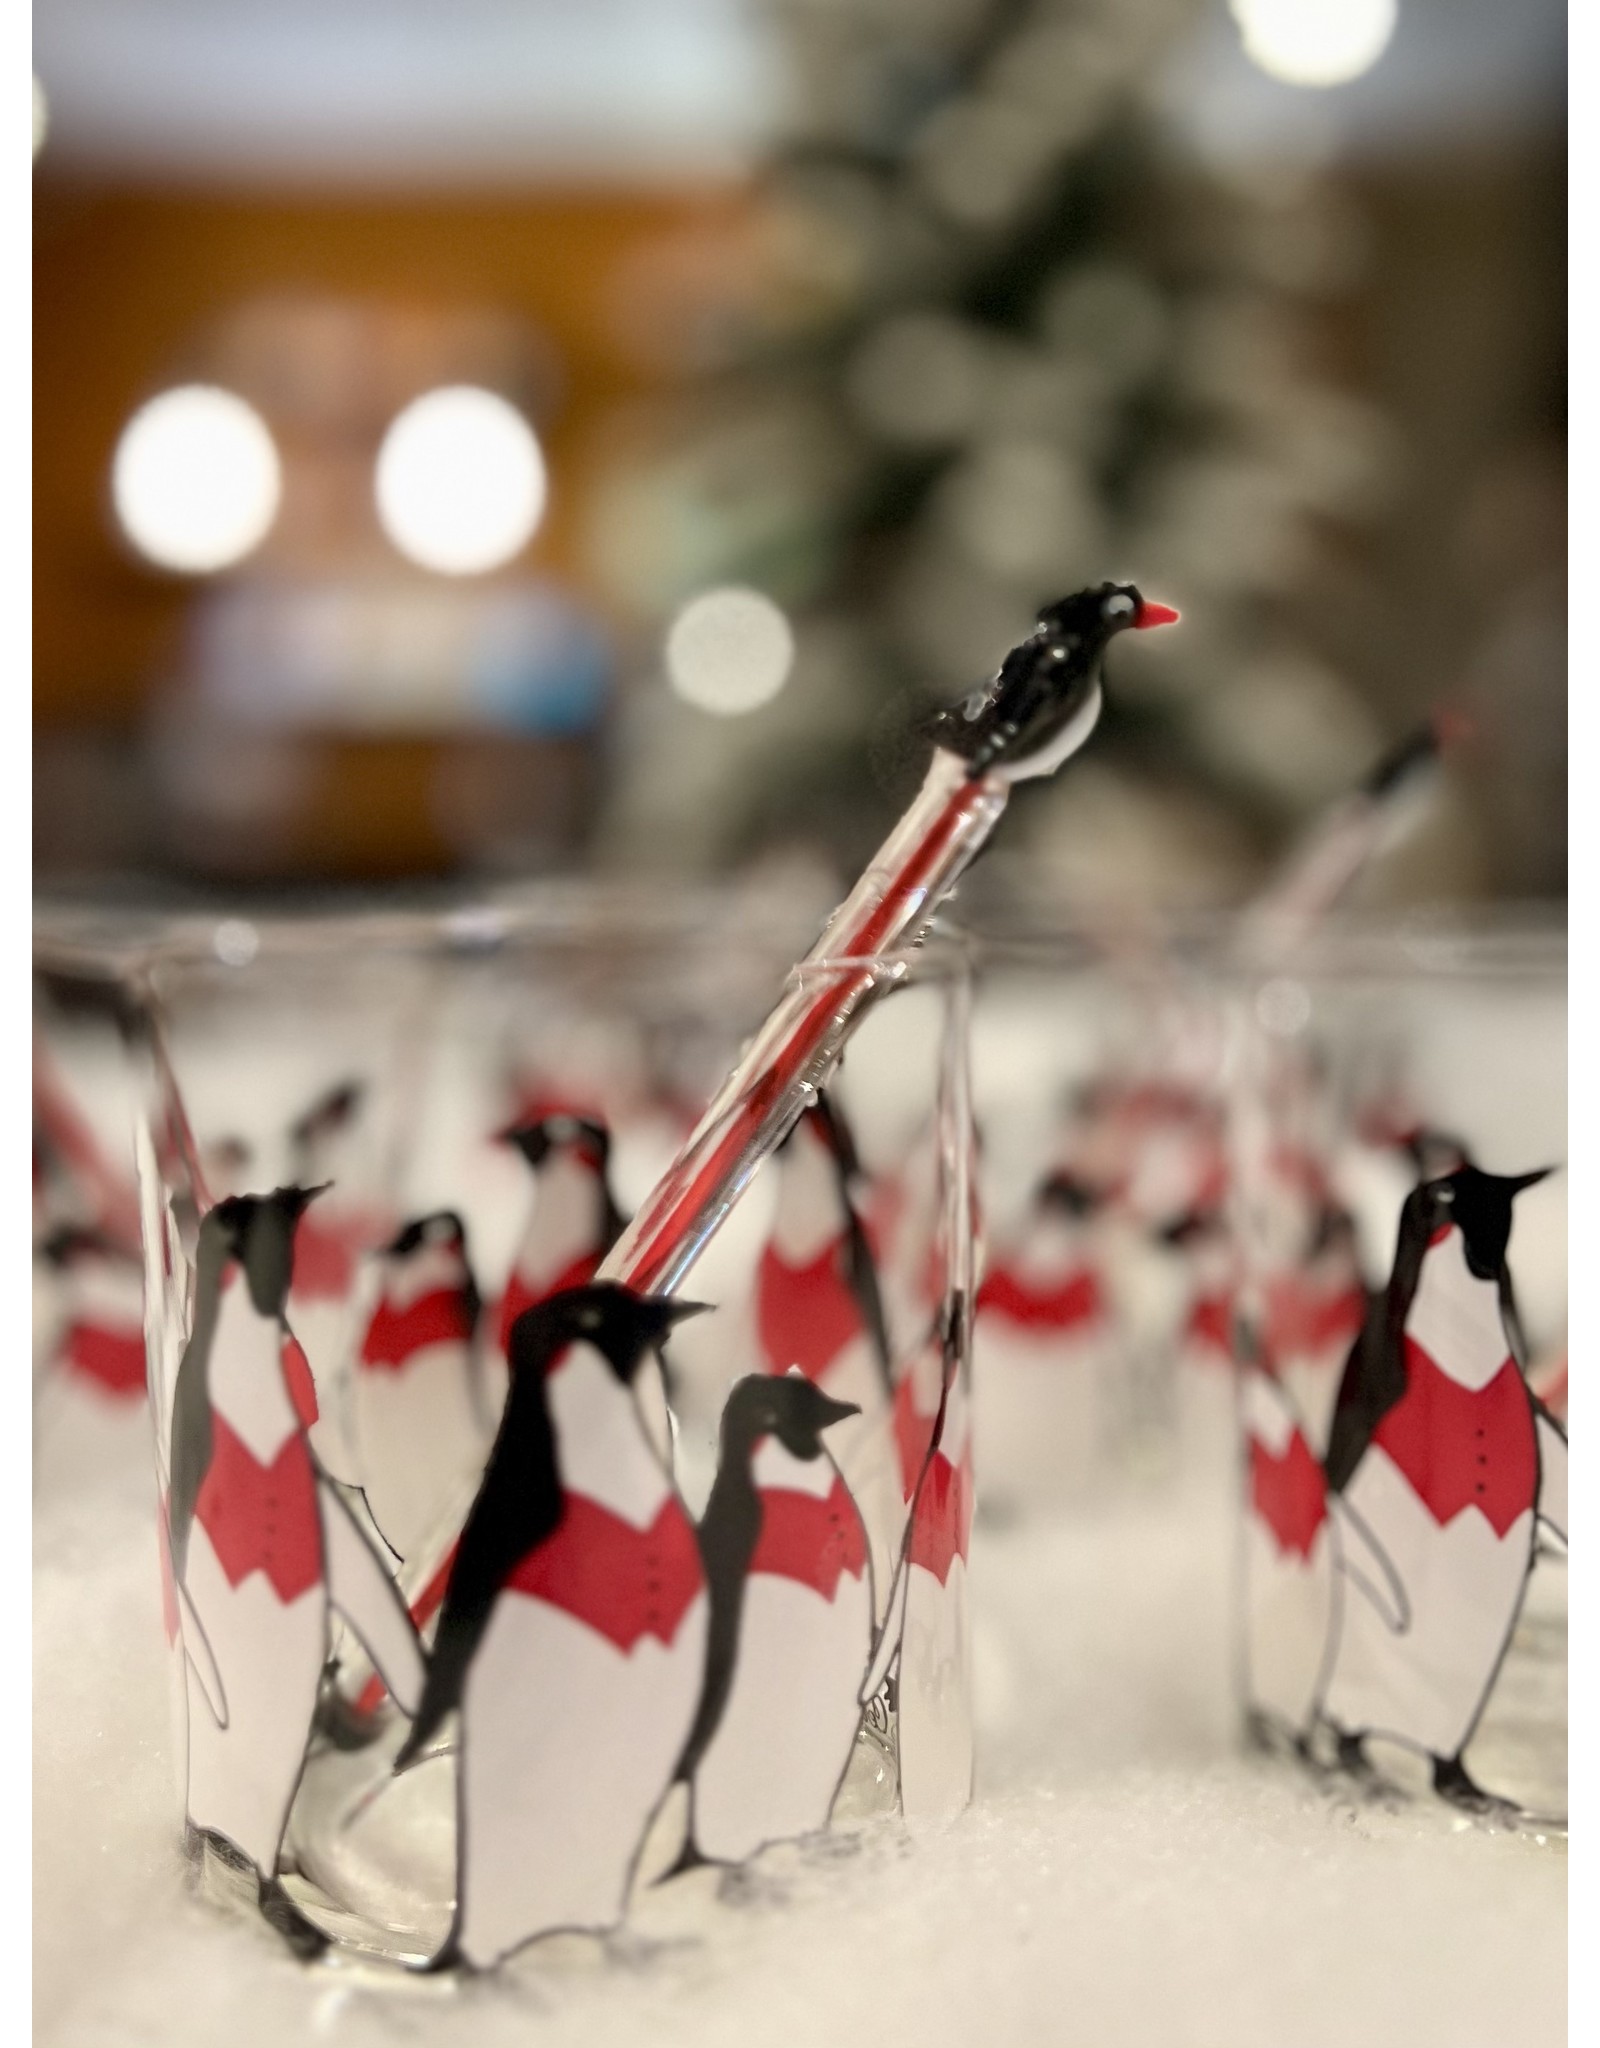 Cera Rocks Glasses 'Penguins with Red Vests' (Set of 6)